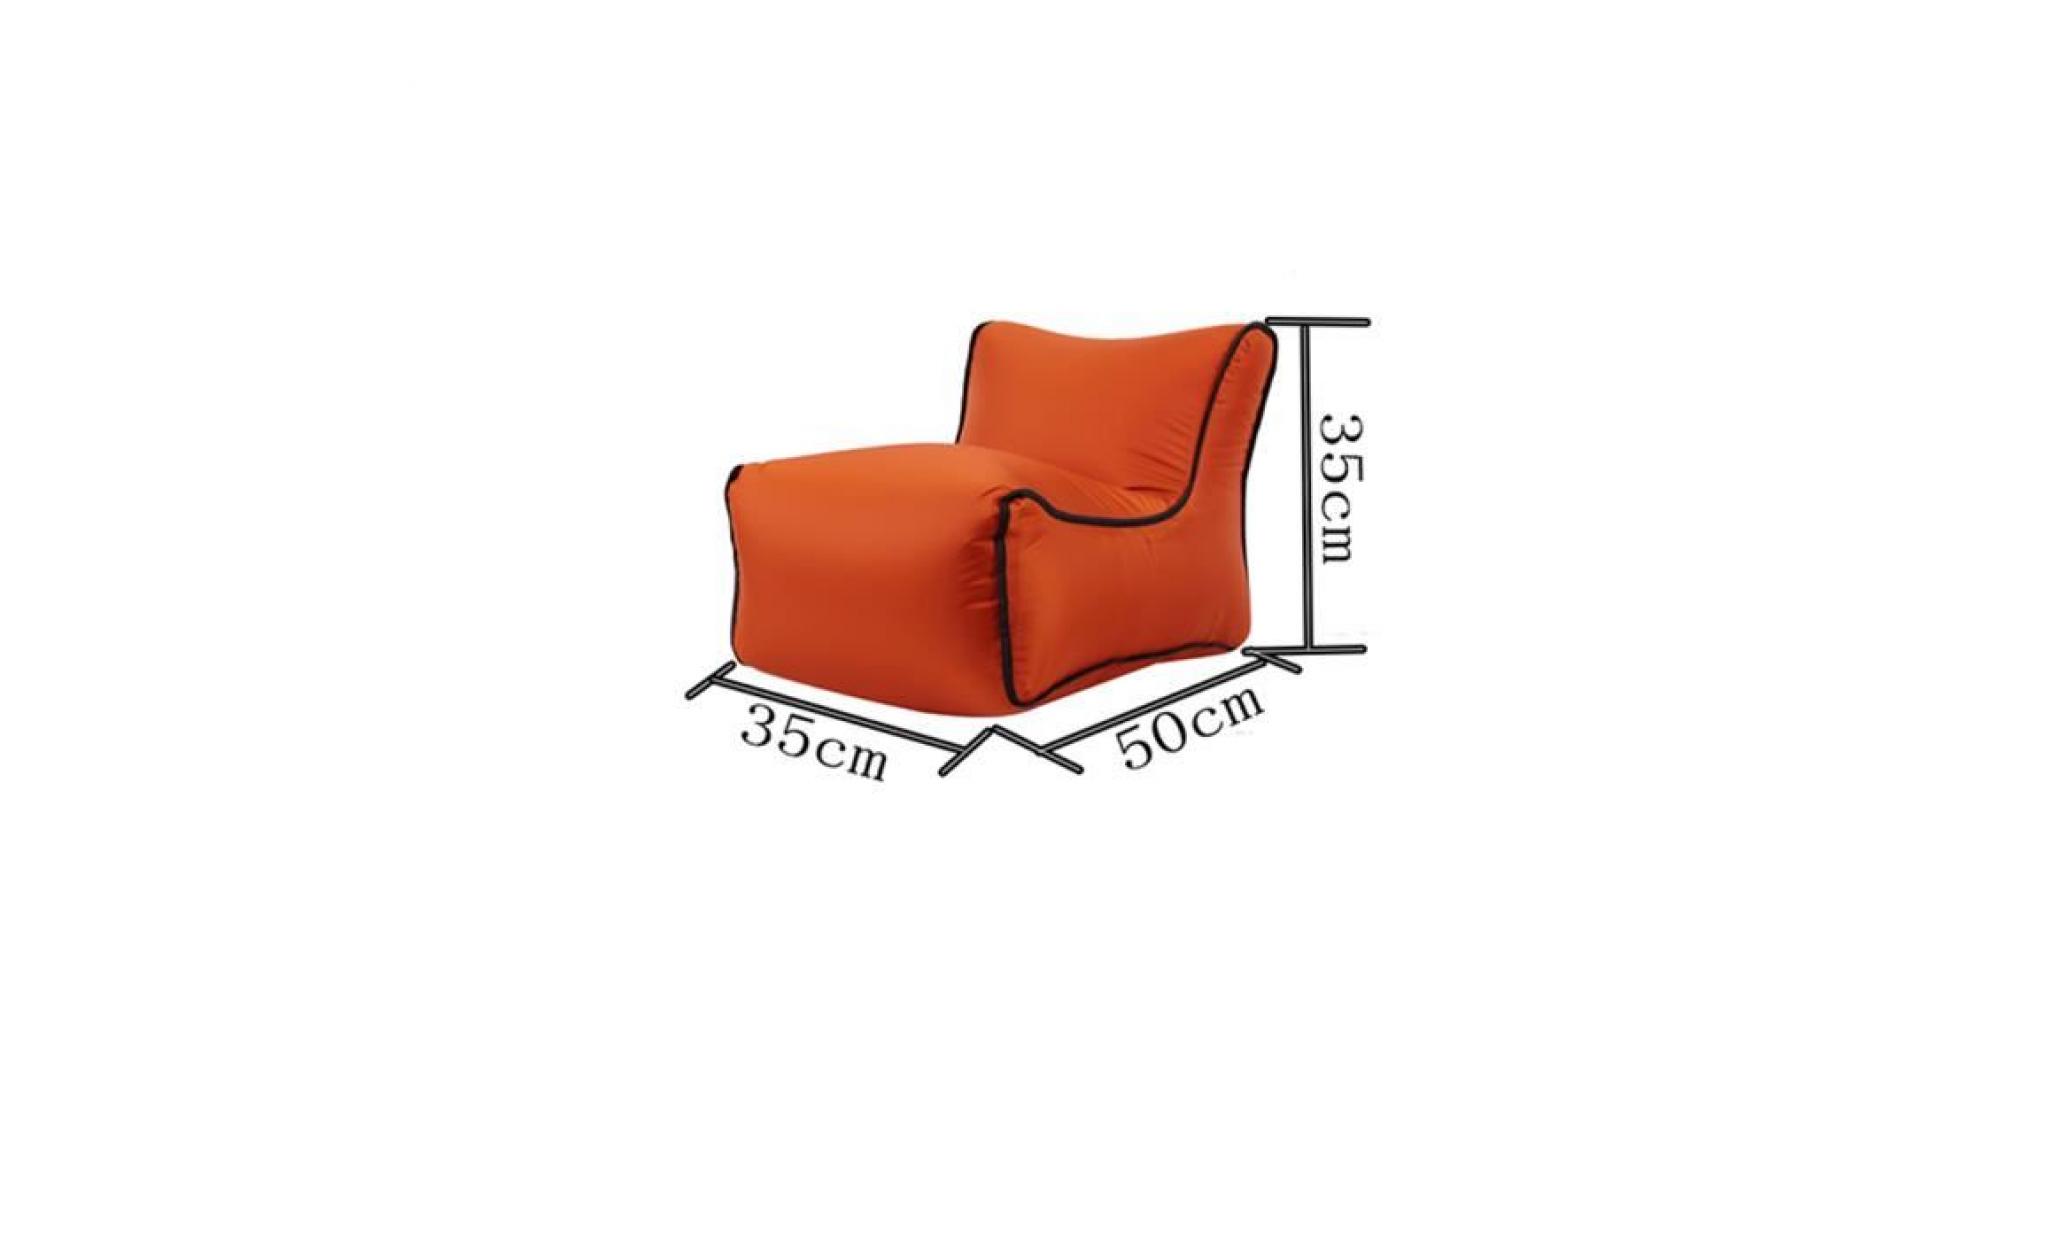 35x50x35cm 1pcs chaise de jardin pliante plastique, chaise gonflable, chaise pliante camping, air canapé gonflable pliable   orange pas cher